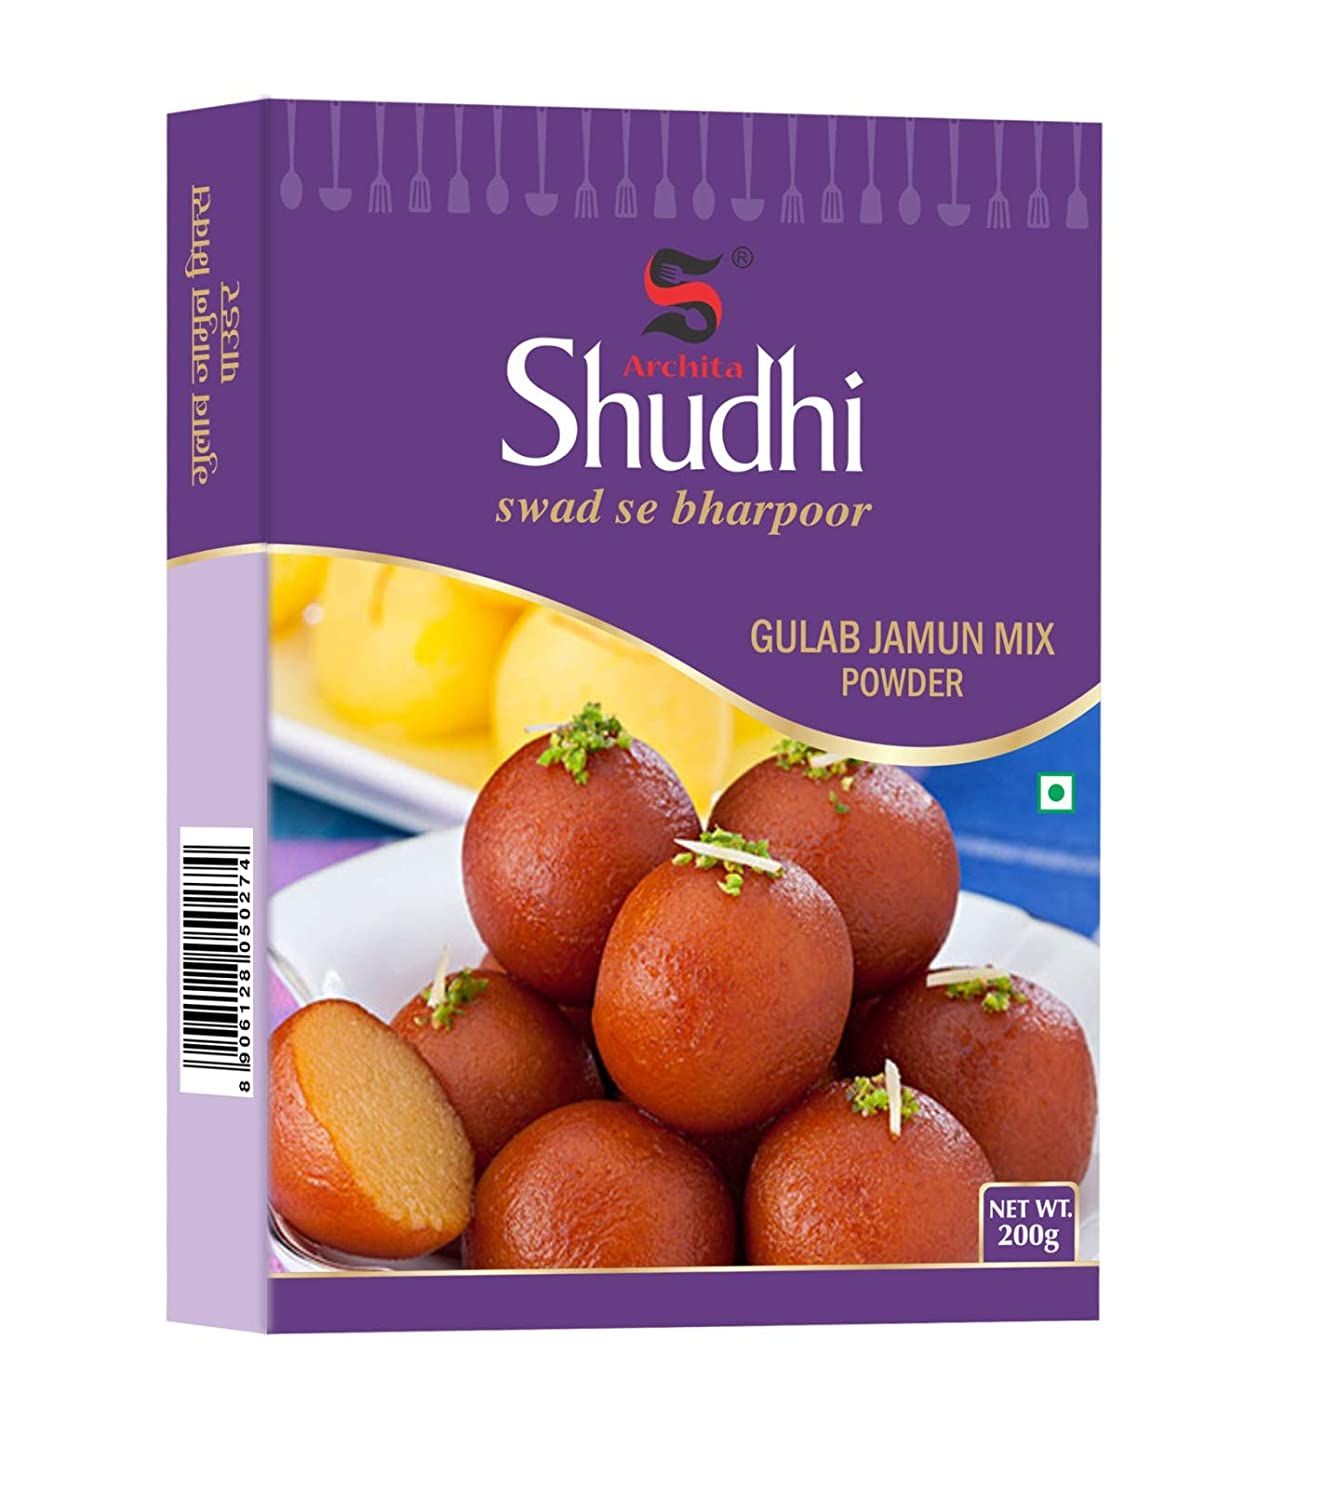 Archita Shudhi Gulab Jamun Powder Mix Image